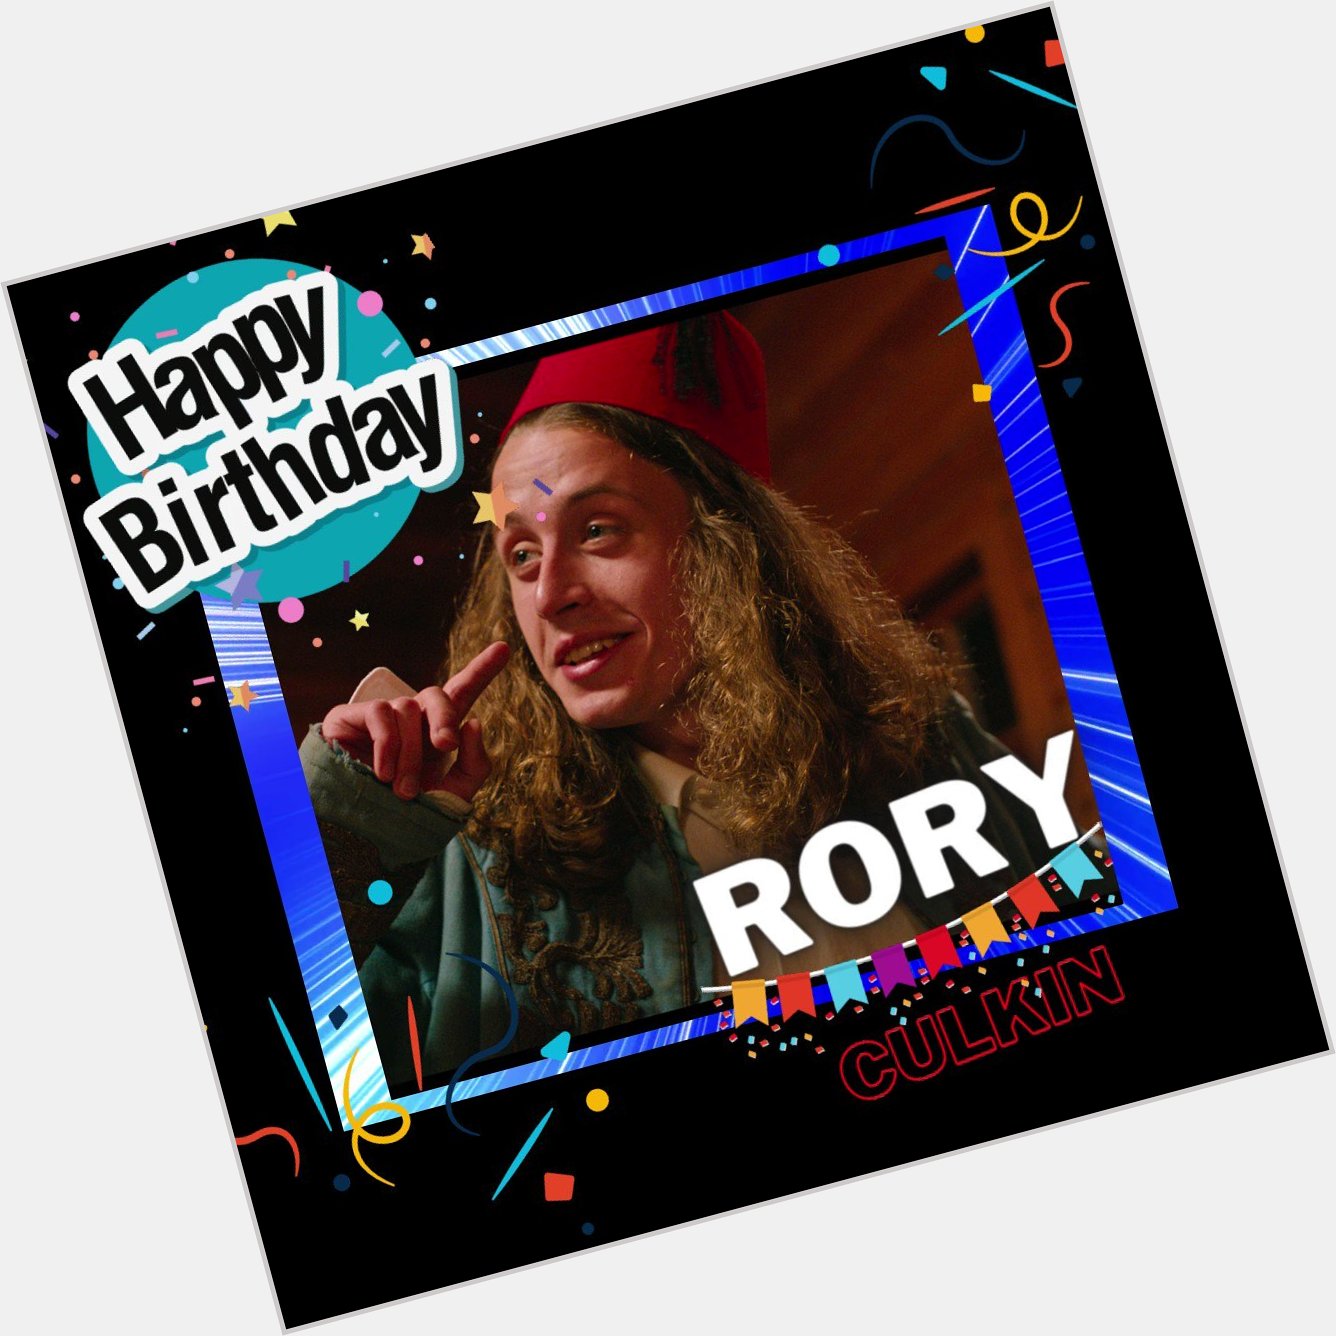 Happy Birthday Rory Culkin. 
.
.  